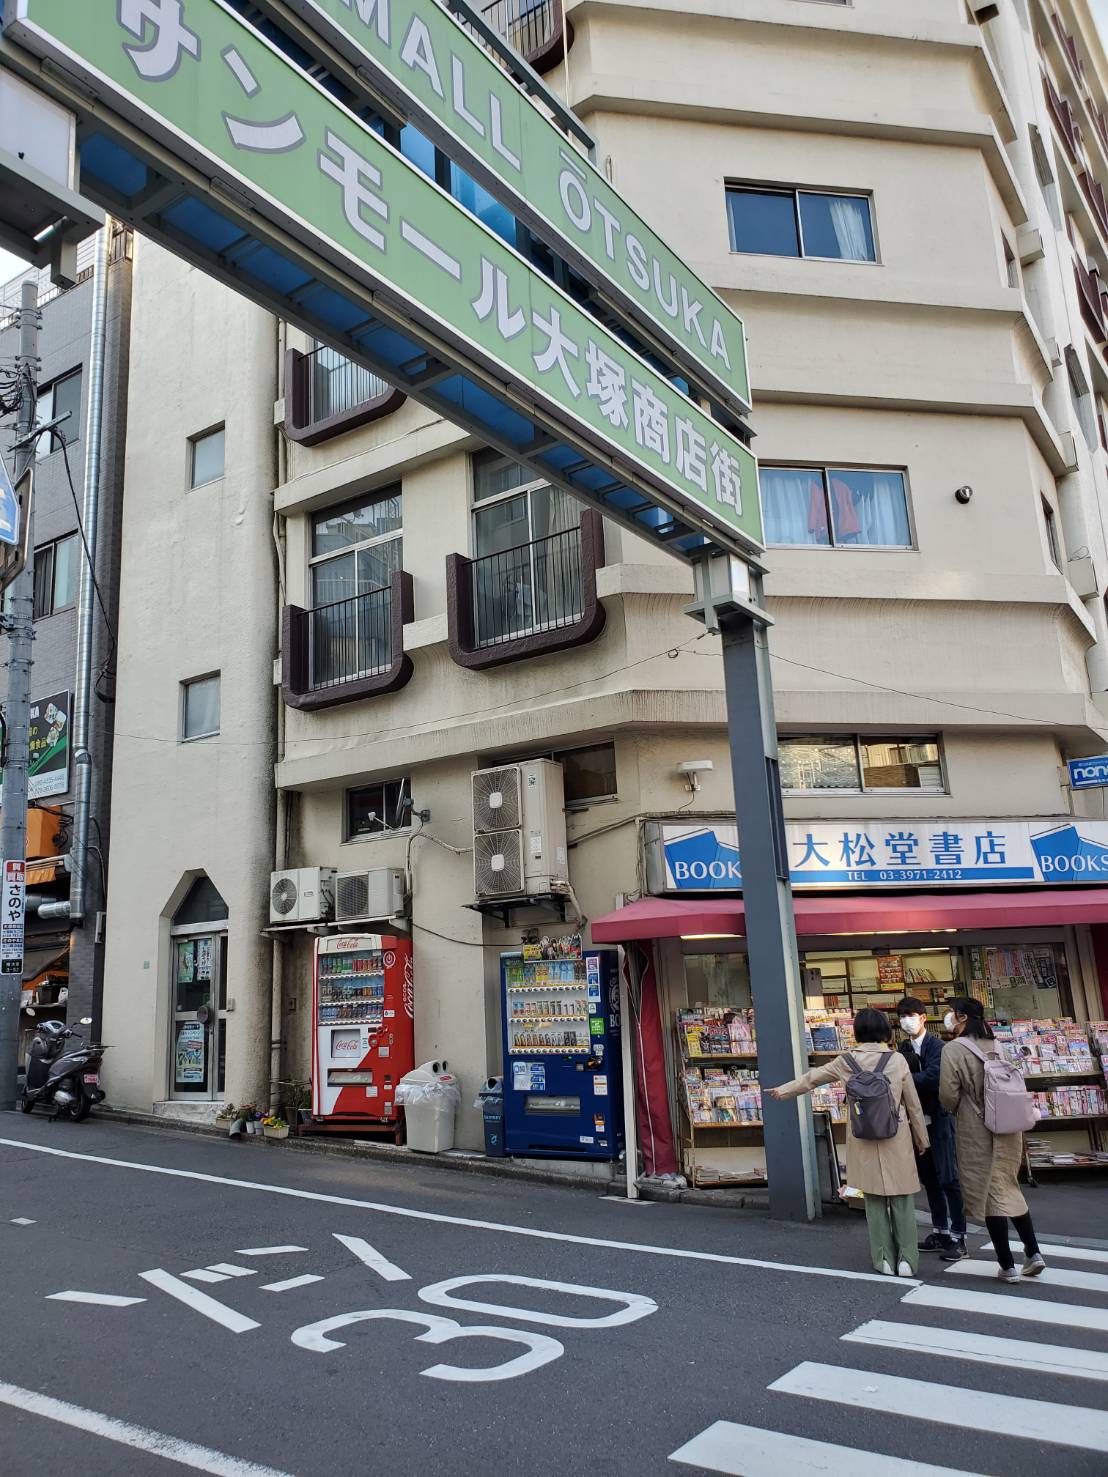 さらにしばらく進むと、左手にサンモール大塚商店街のガードがありますのでくぐるように左へ。